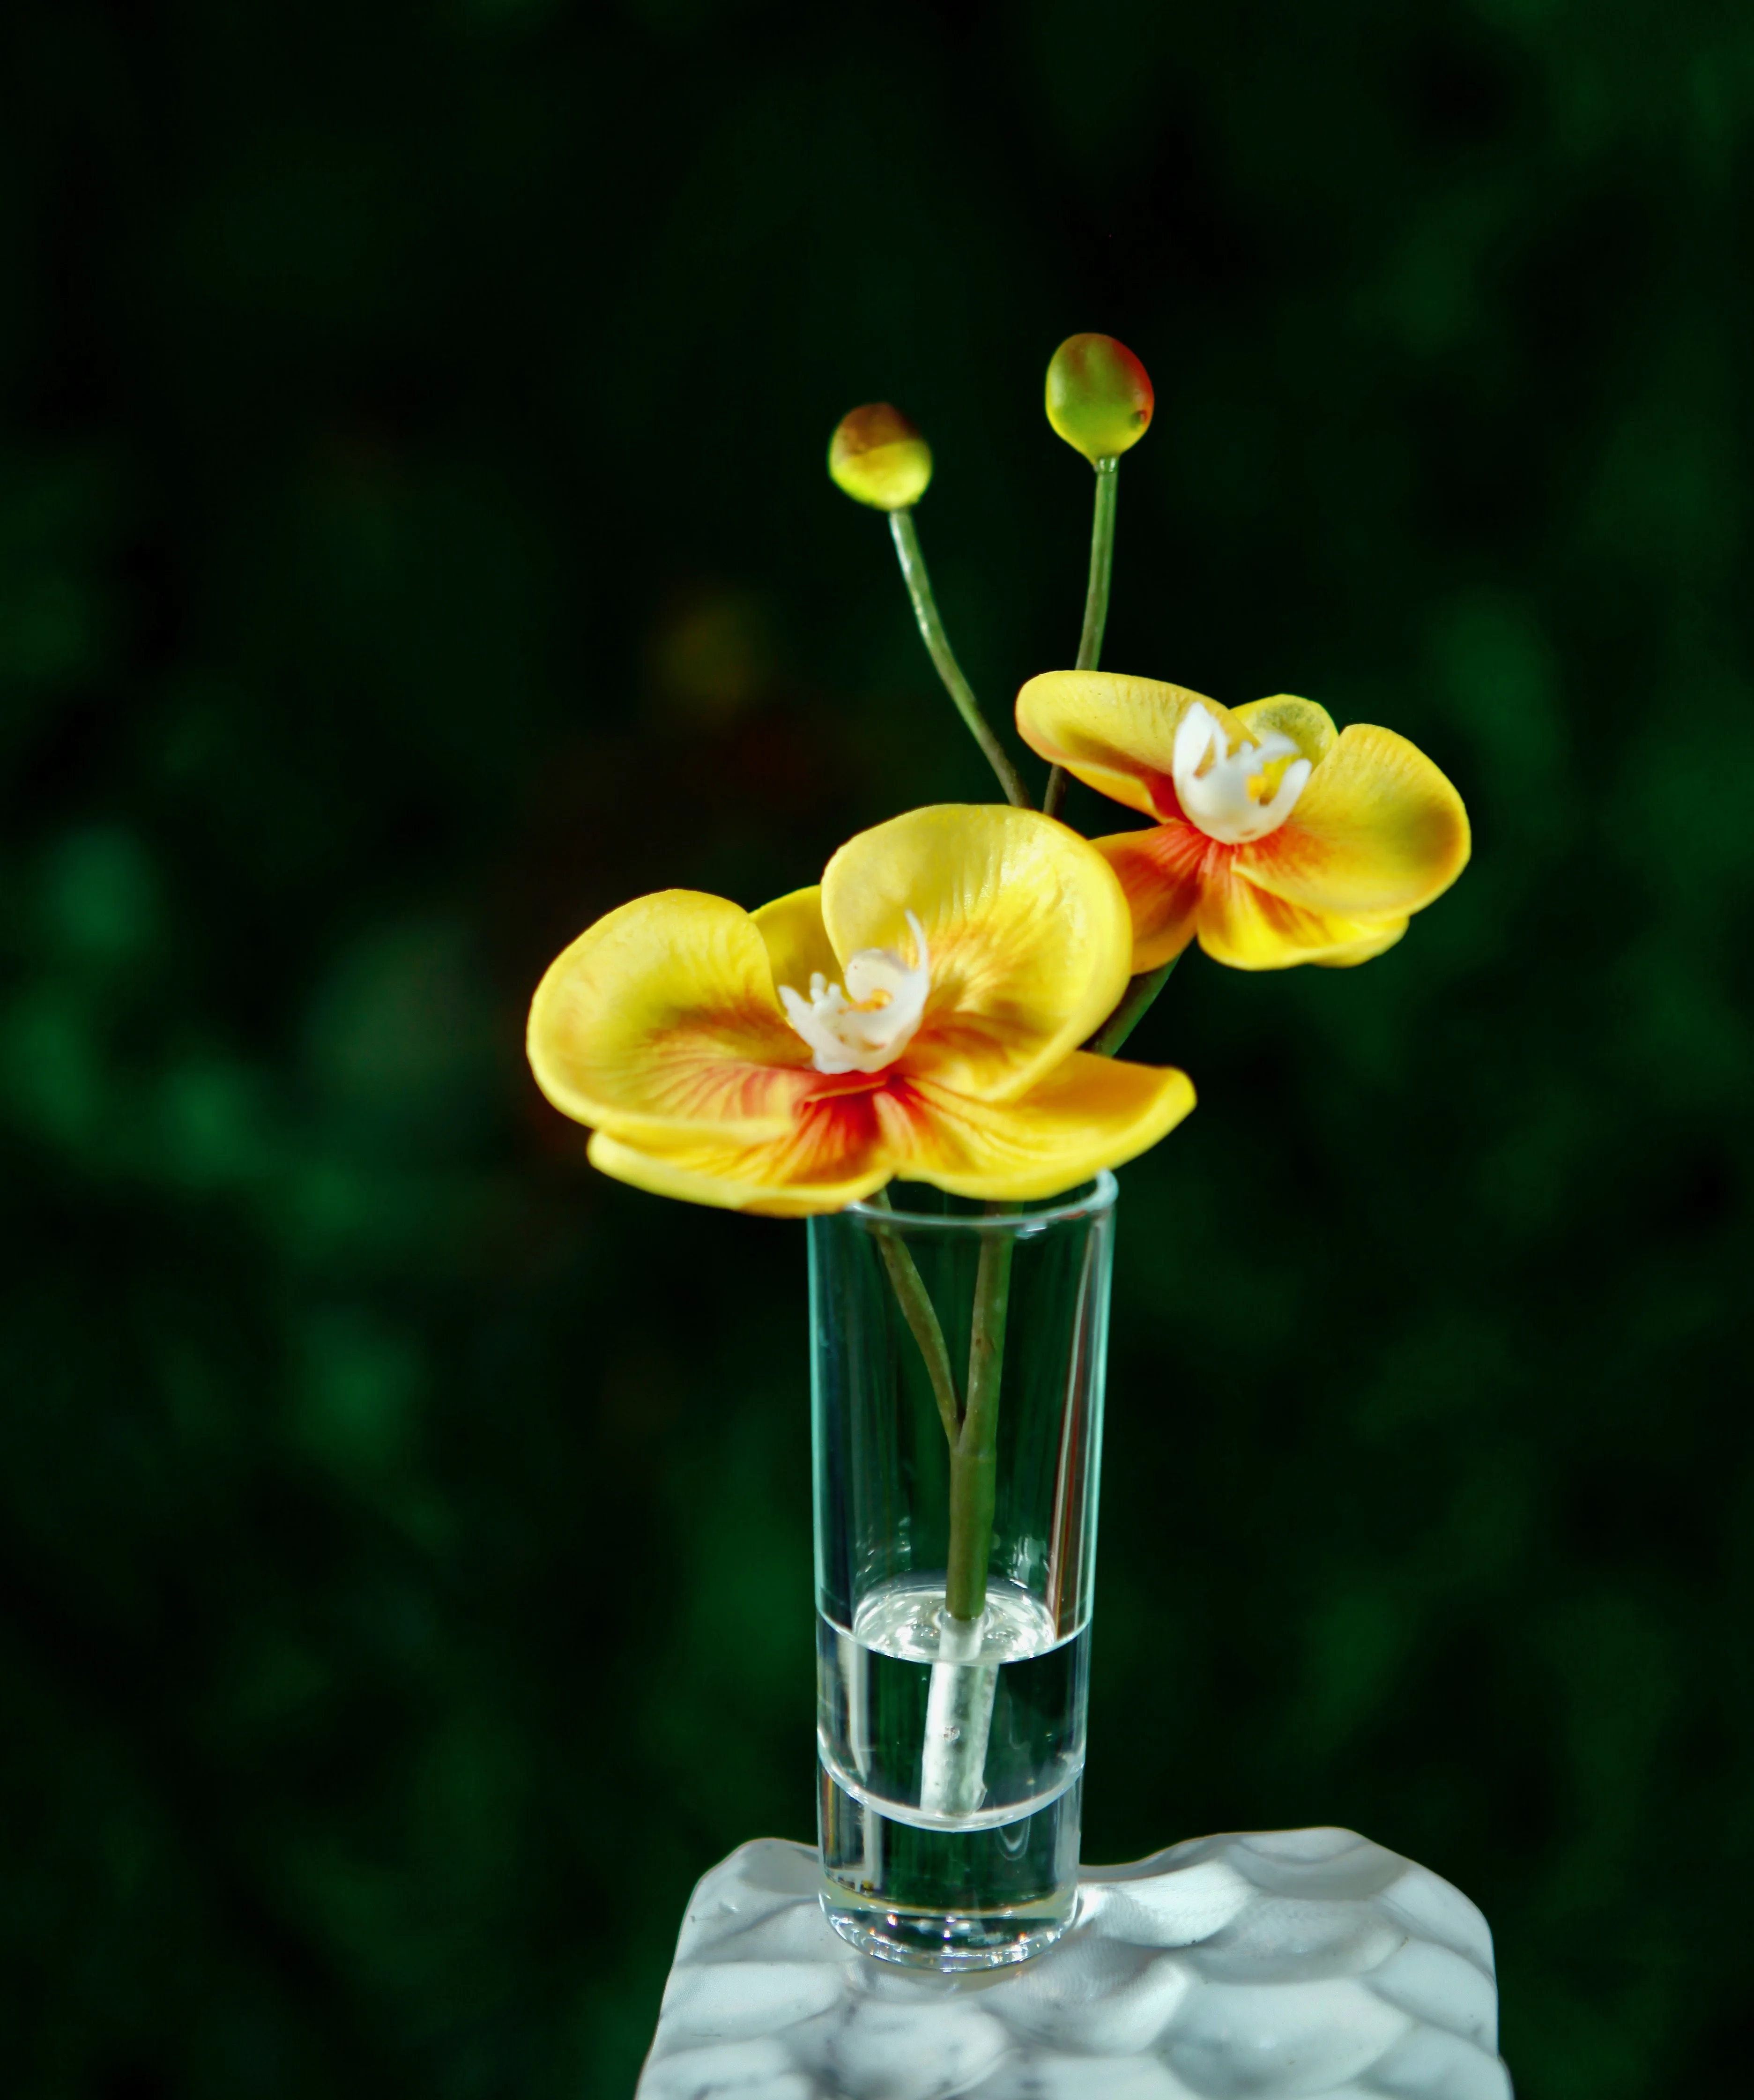 Decorative Artificial Flowers Arrangements For Home Decor